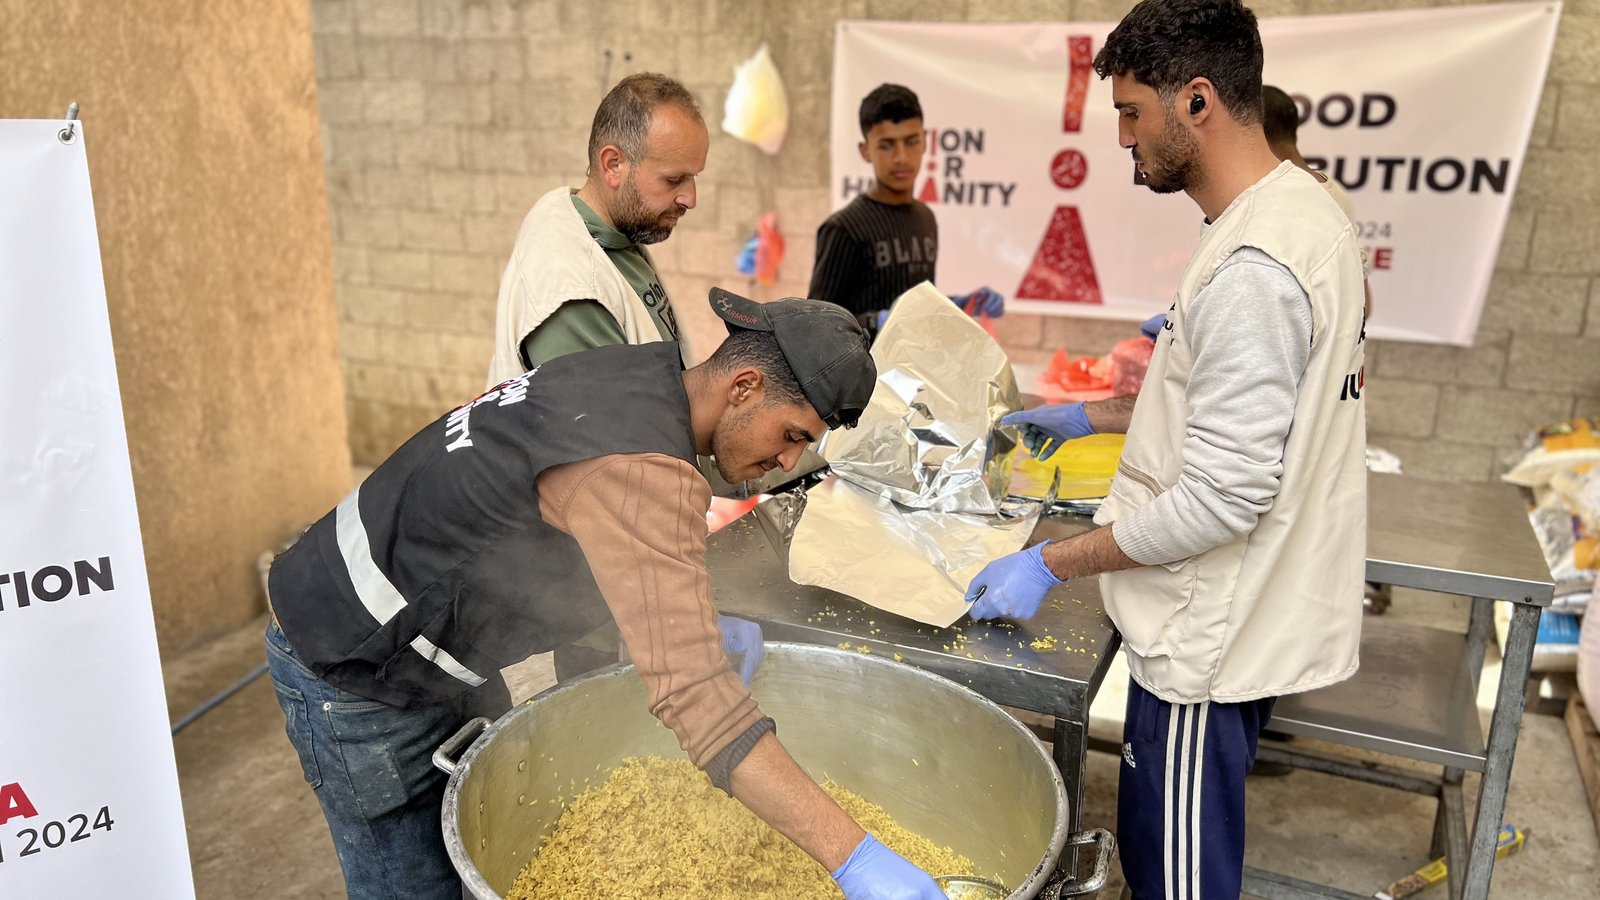 Zubereitung von warmen Mahlzeiten für Gaza